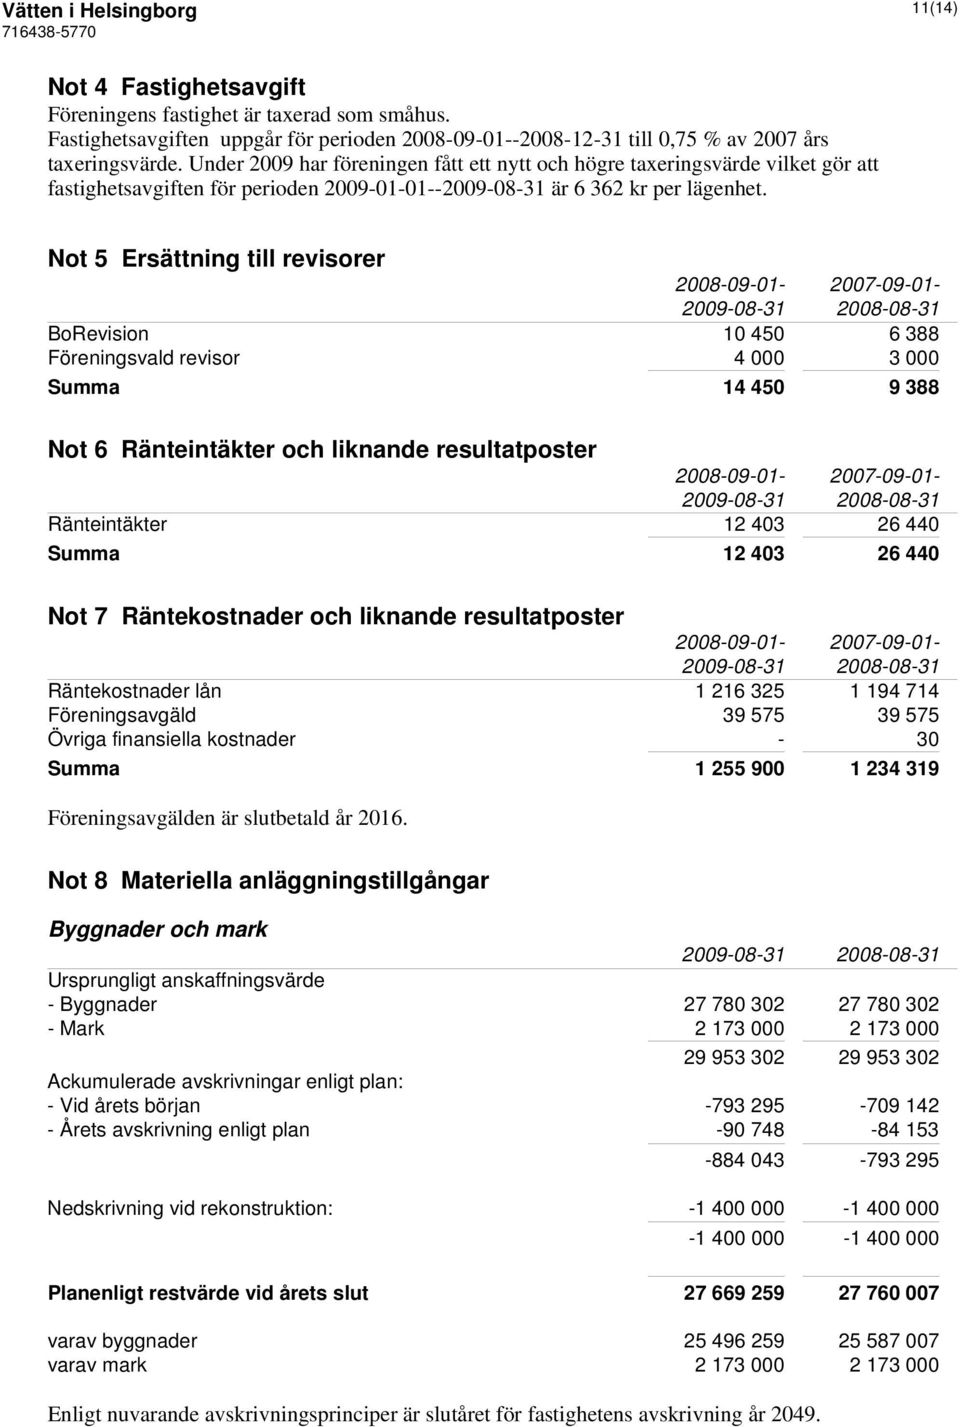 Not 5 Ersättning till revisorer 2008-09-01-2007-09-01- BoRevision 10 450 6 388 Föreningsvald revisor 4 000 3 000 Summa 14 450 9 388 Not 6 Ränteintäkter och liknande resultatposter